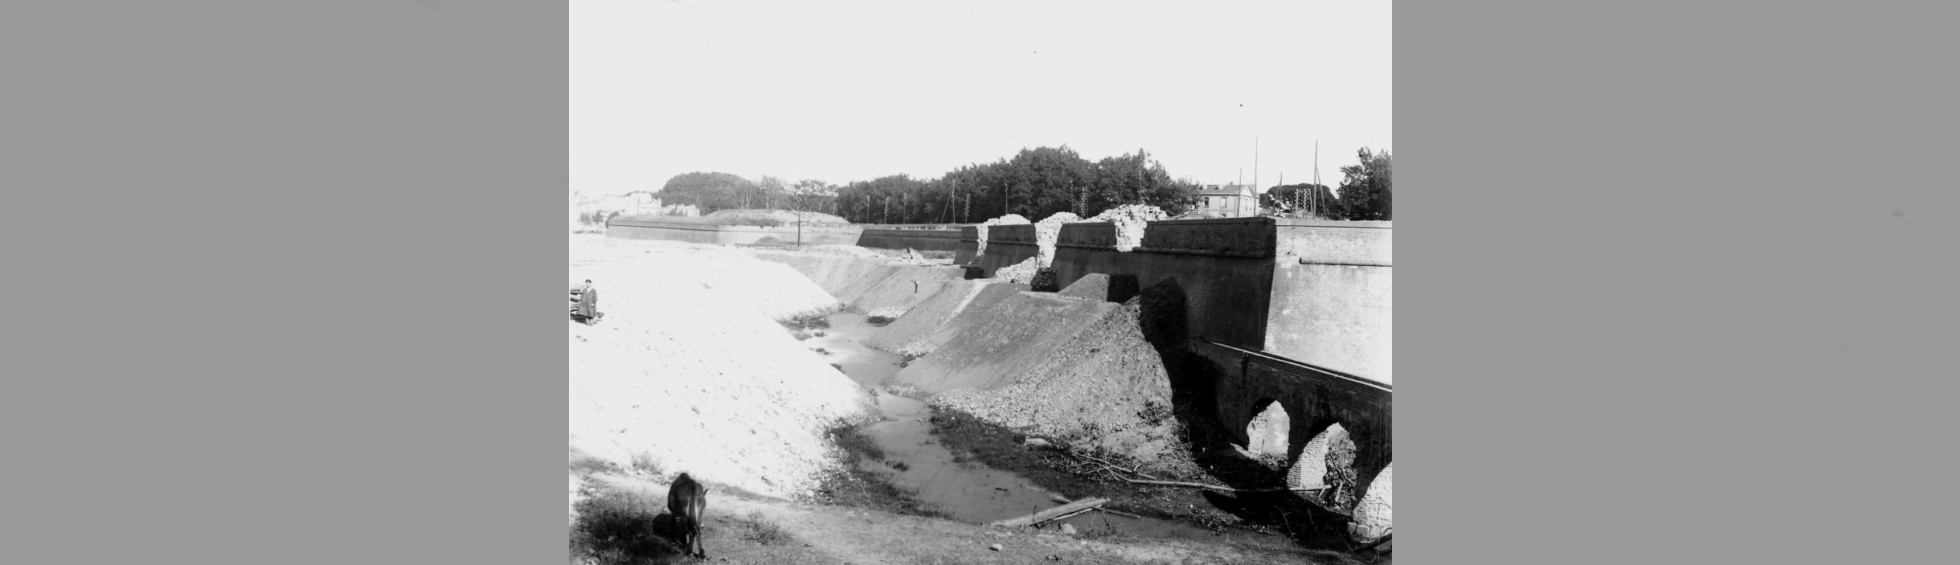 La démolition des remparts du bastion des capucins avec à droite le canal des capucins